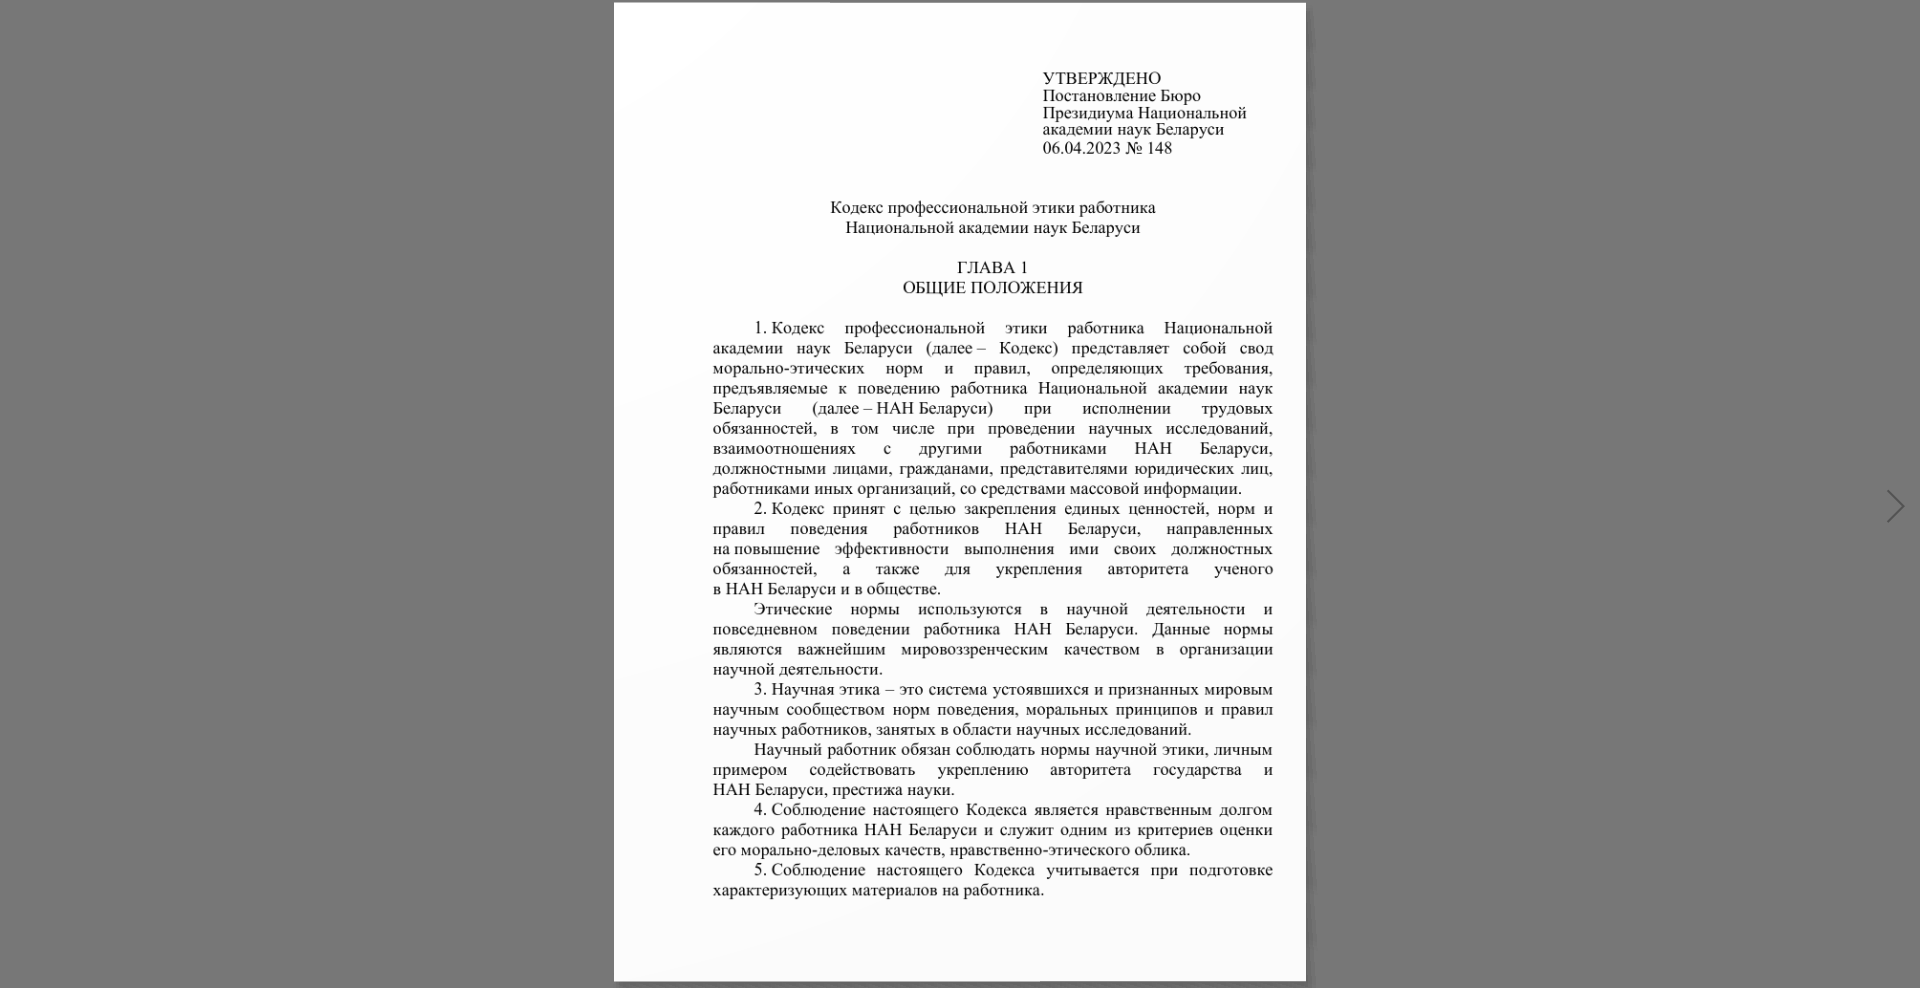 Кодекс профессиональной этики работника Национальной академии наук Беларуси